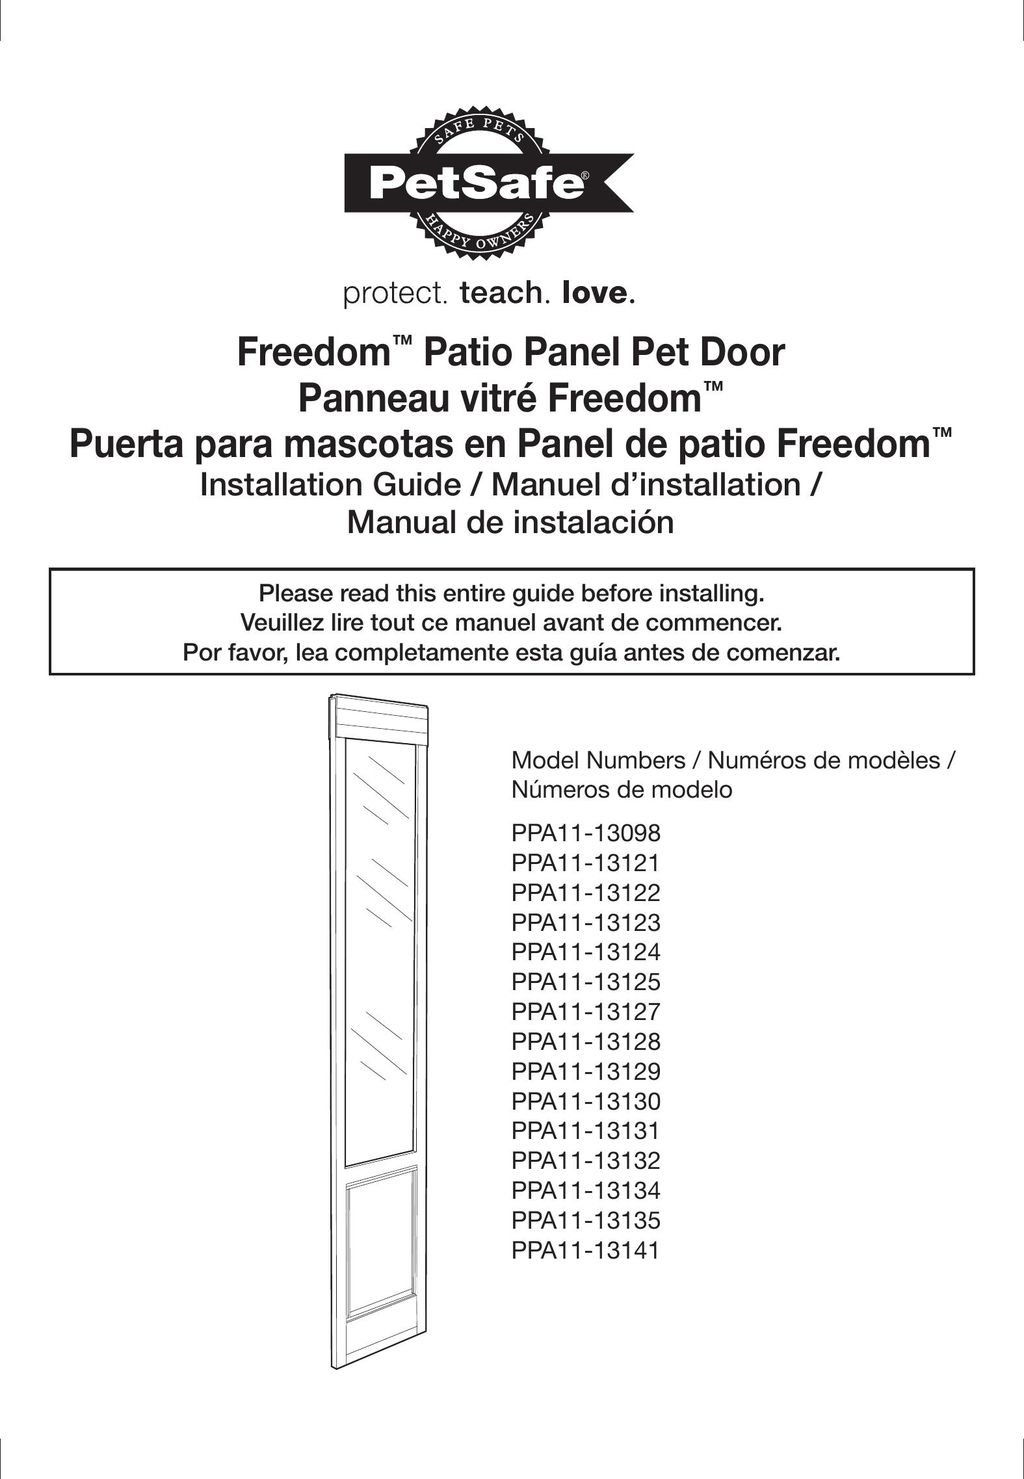 Petsafe PPA11-13134 Door User Manual